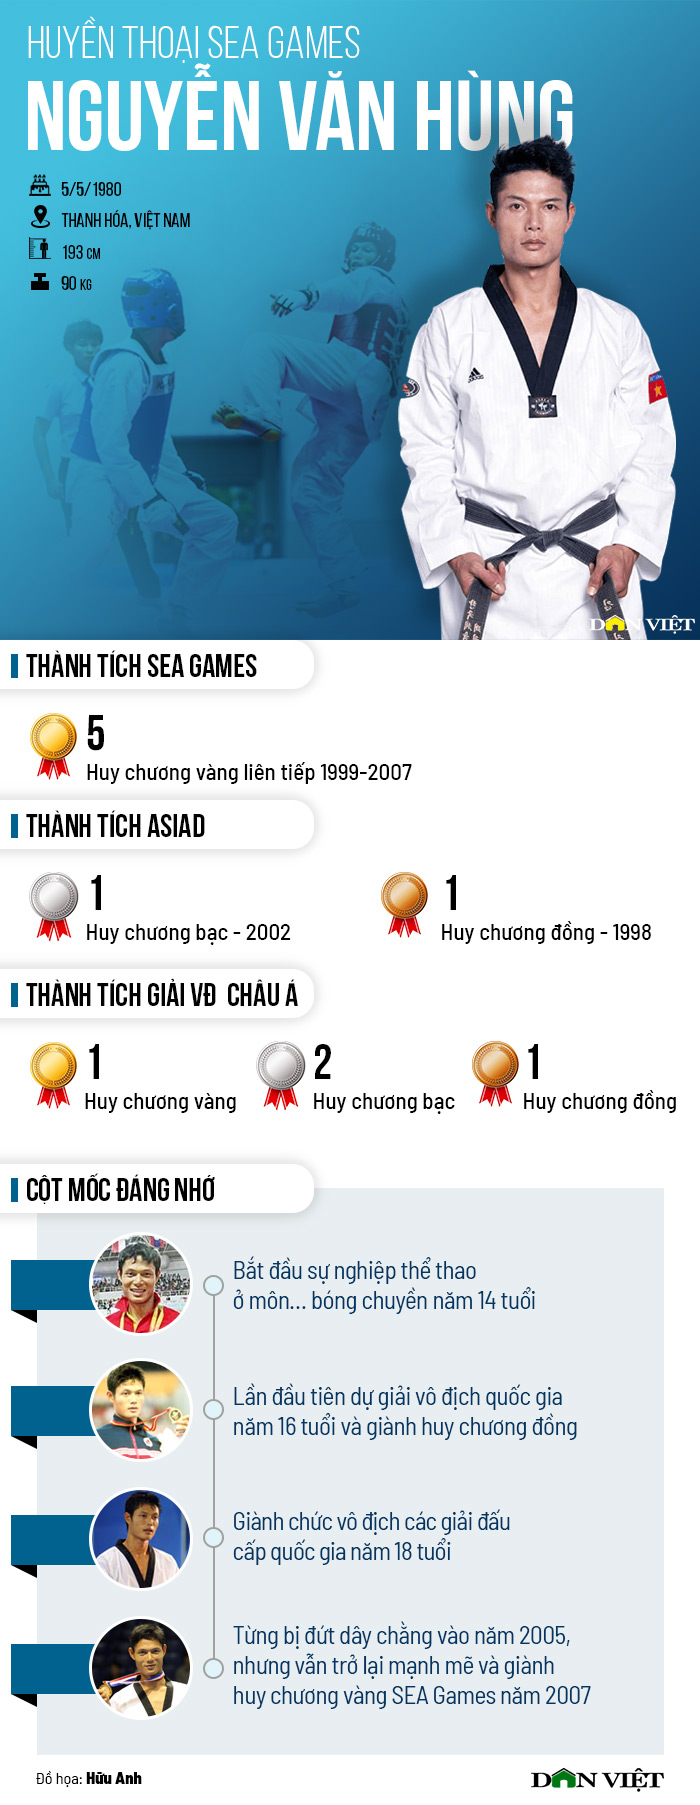 Huyền thoại SEA Games: Nguyễn Văn Hùng - &quot;Độc cô cầu bại&quot; taekwondo - Ảnh 2.